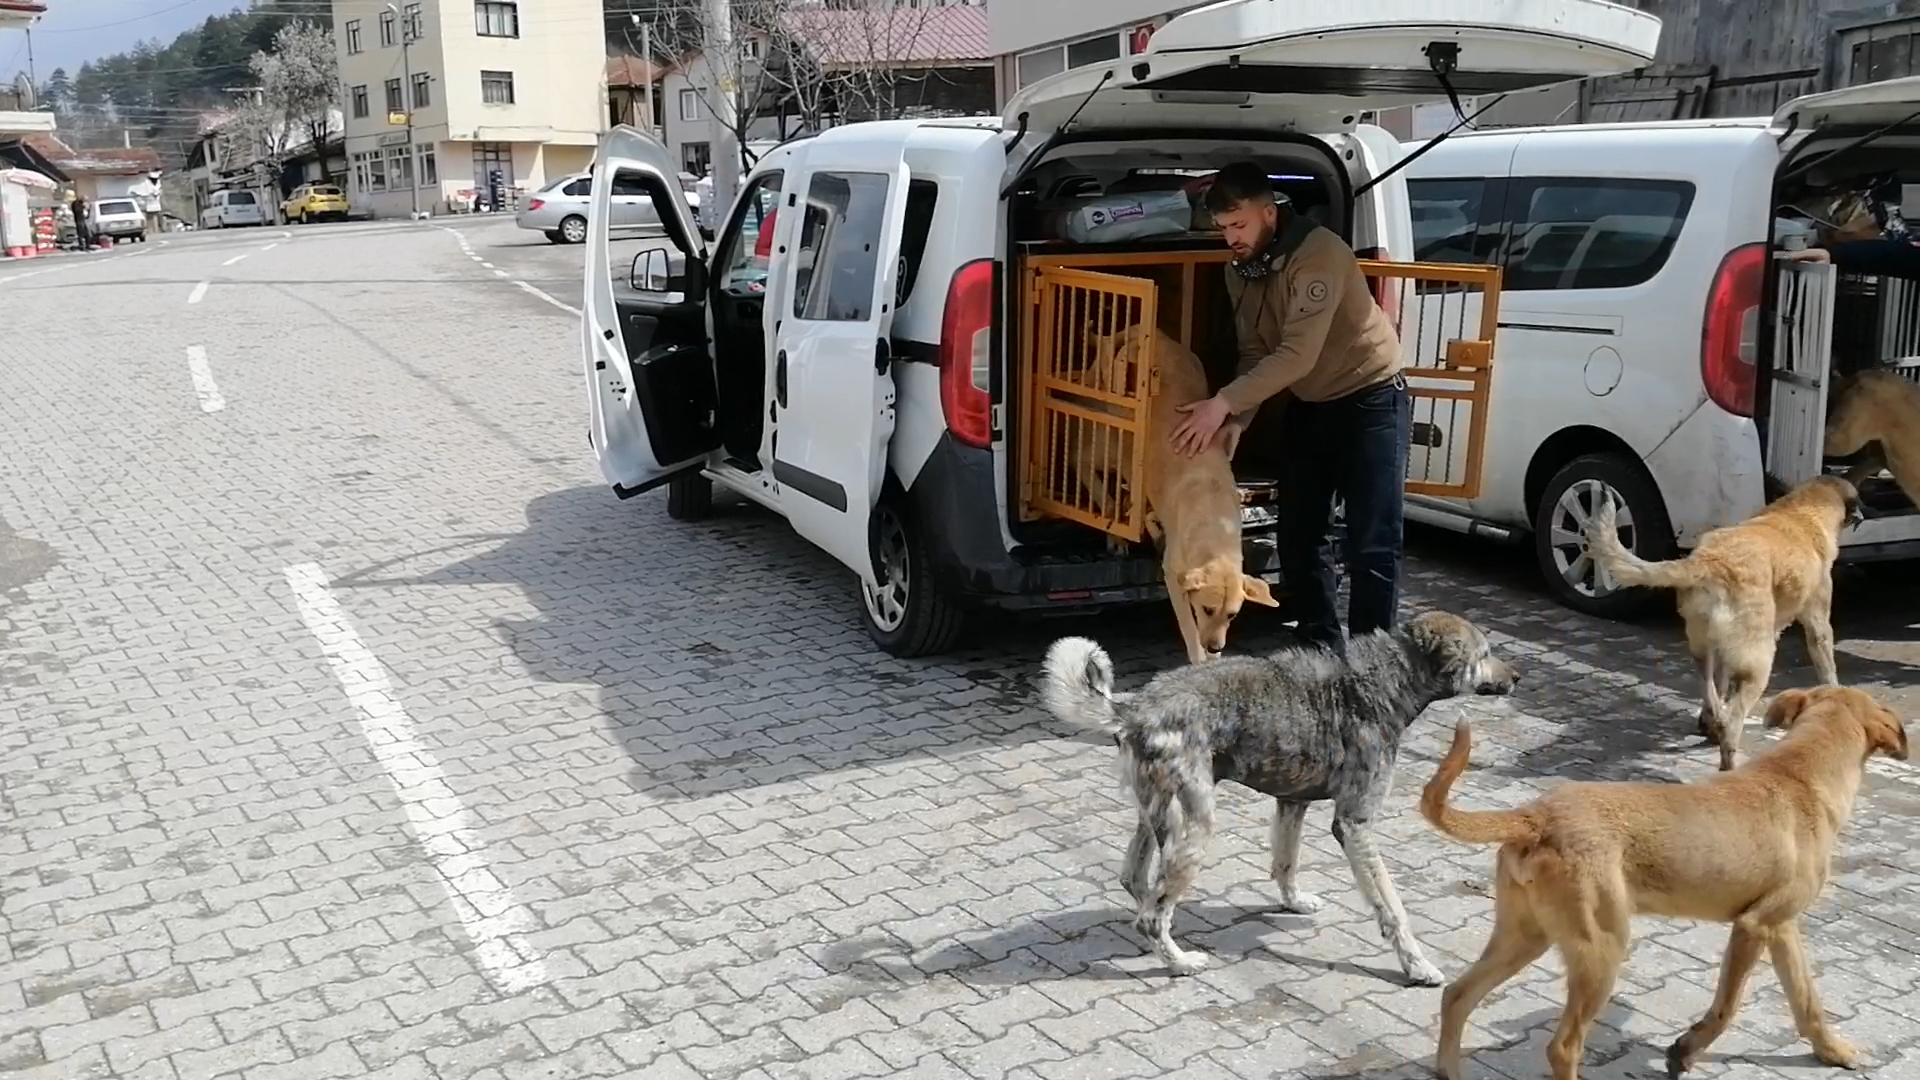 Mengen ve çevresinde yaşayan sokak hayvanlarının zorlu yaşam mücadelesine destek olmaya çalışıyorlar